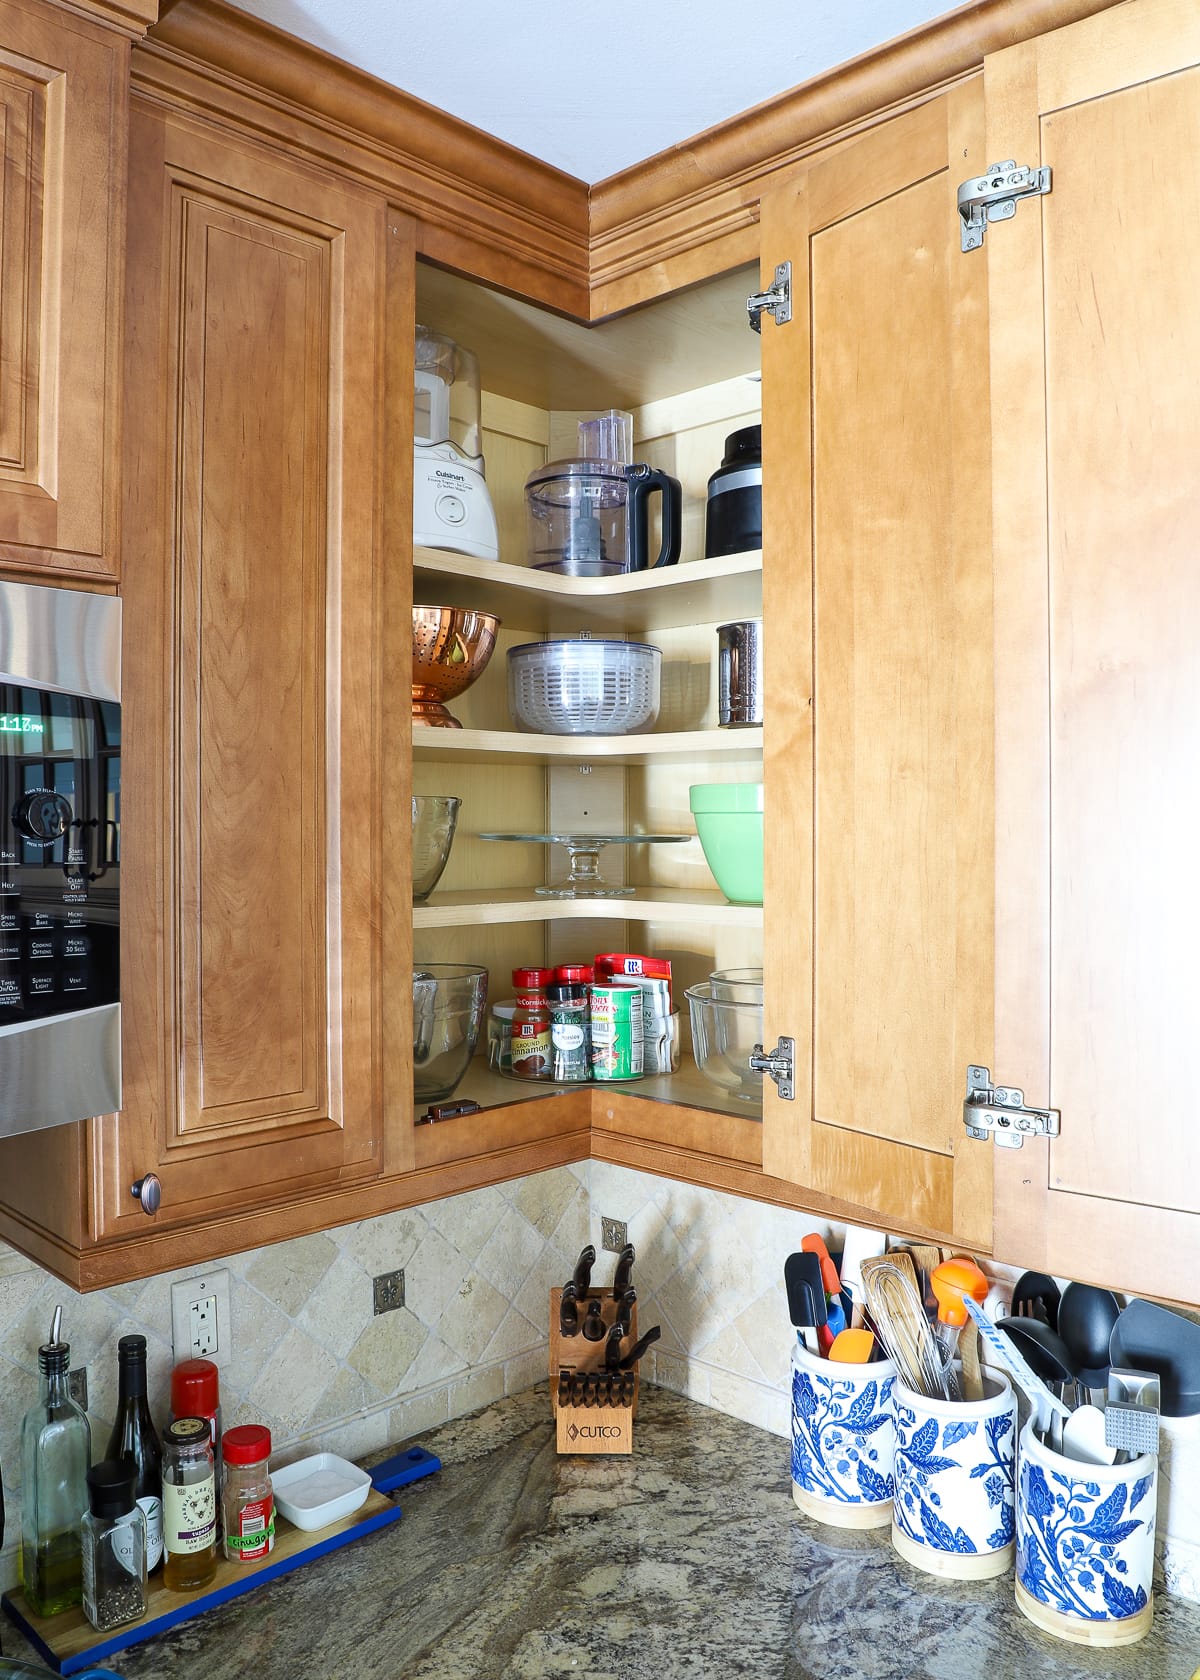 How To Organize Corner Kitchen Cabinets, Corner Kitchen Cabinet Organization Ideas